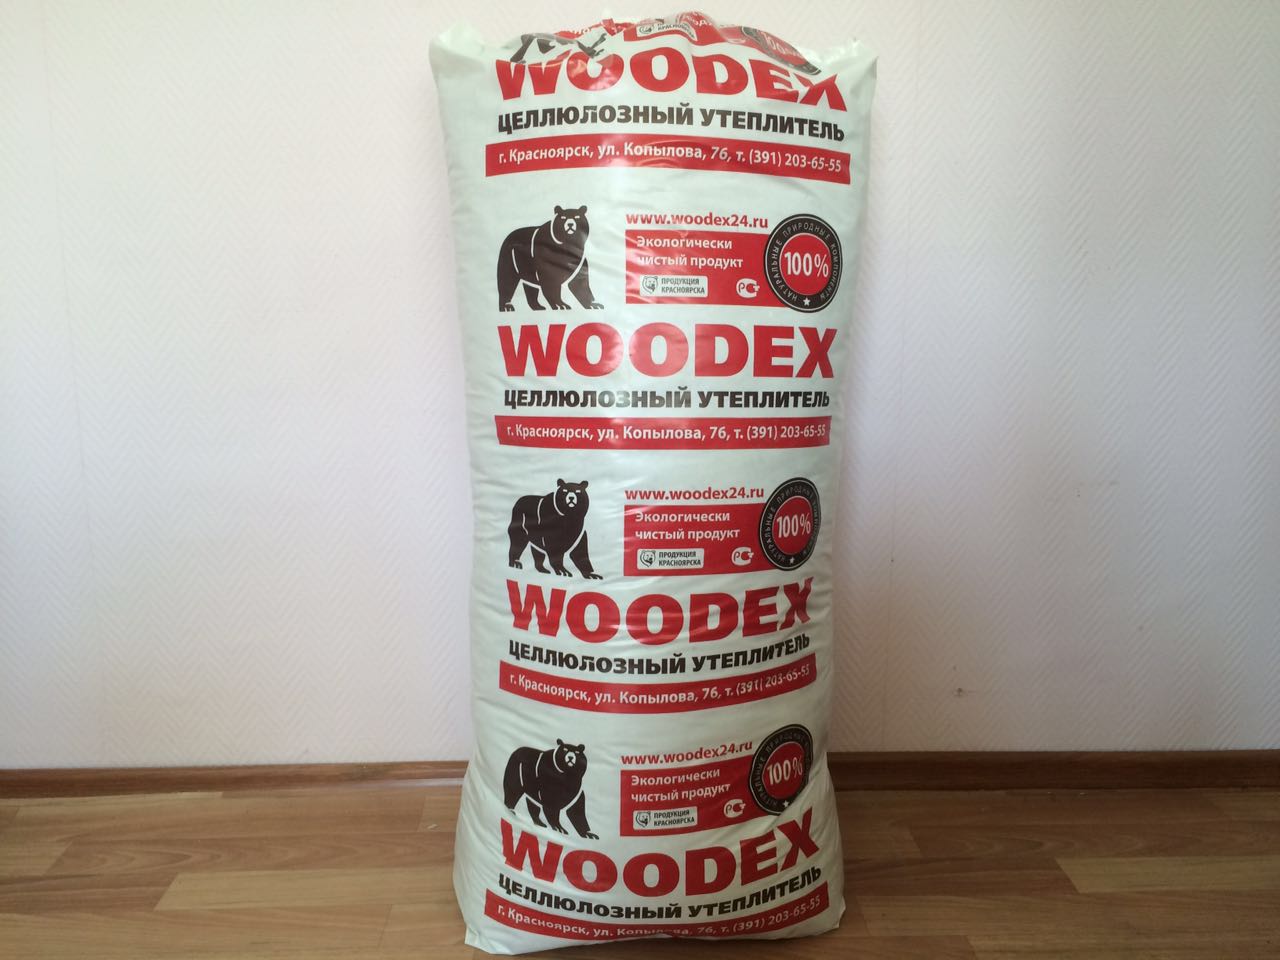   Woodex Holz